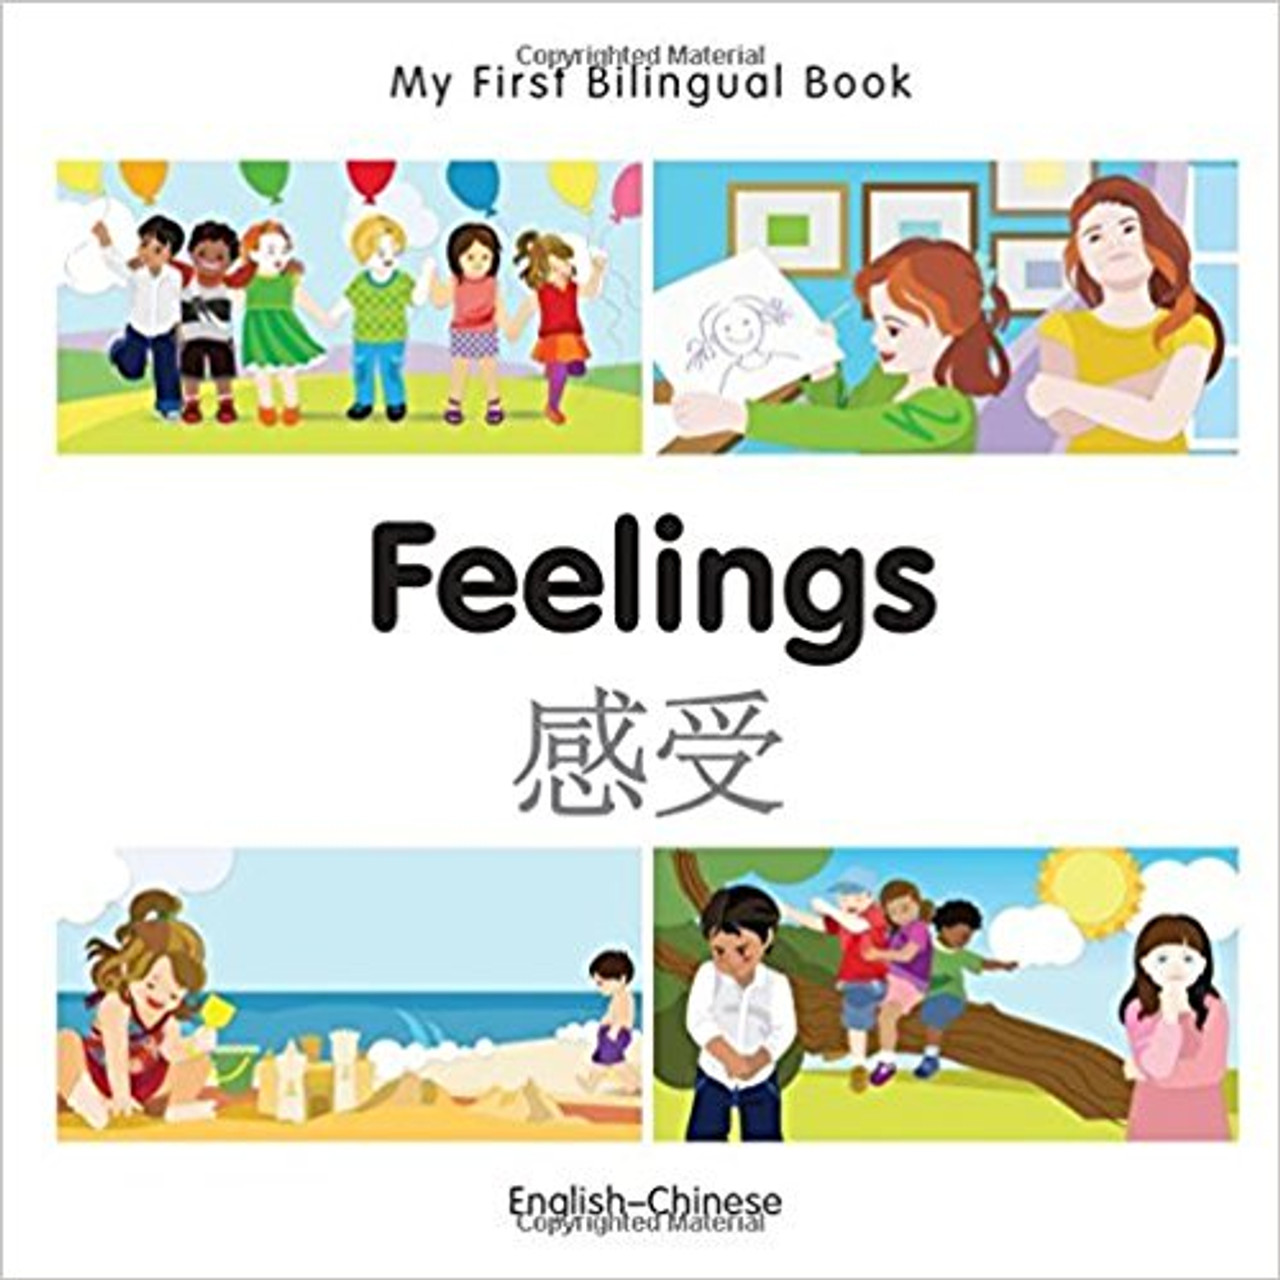 Feelings by Millet Publishing